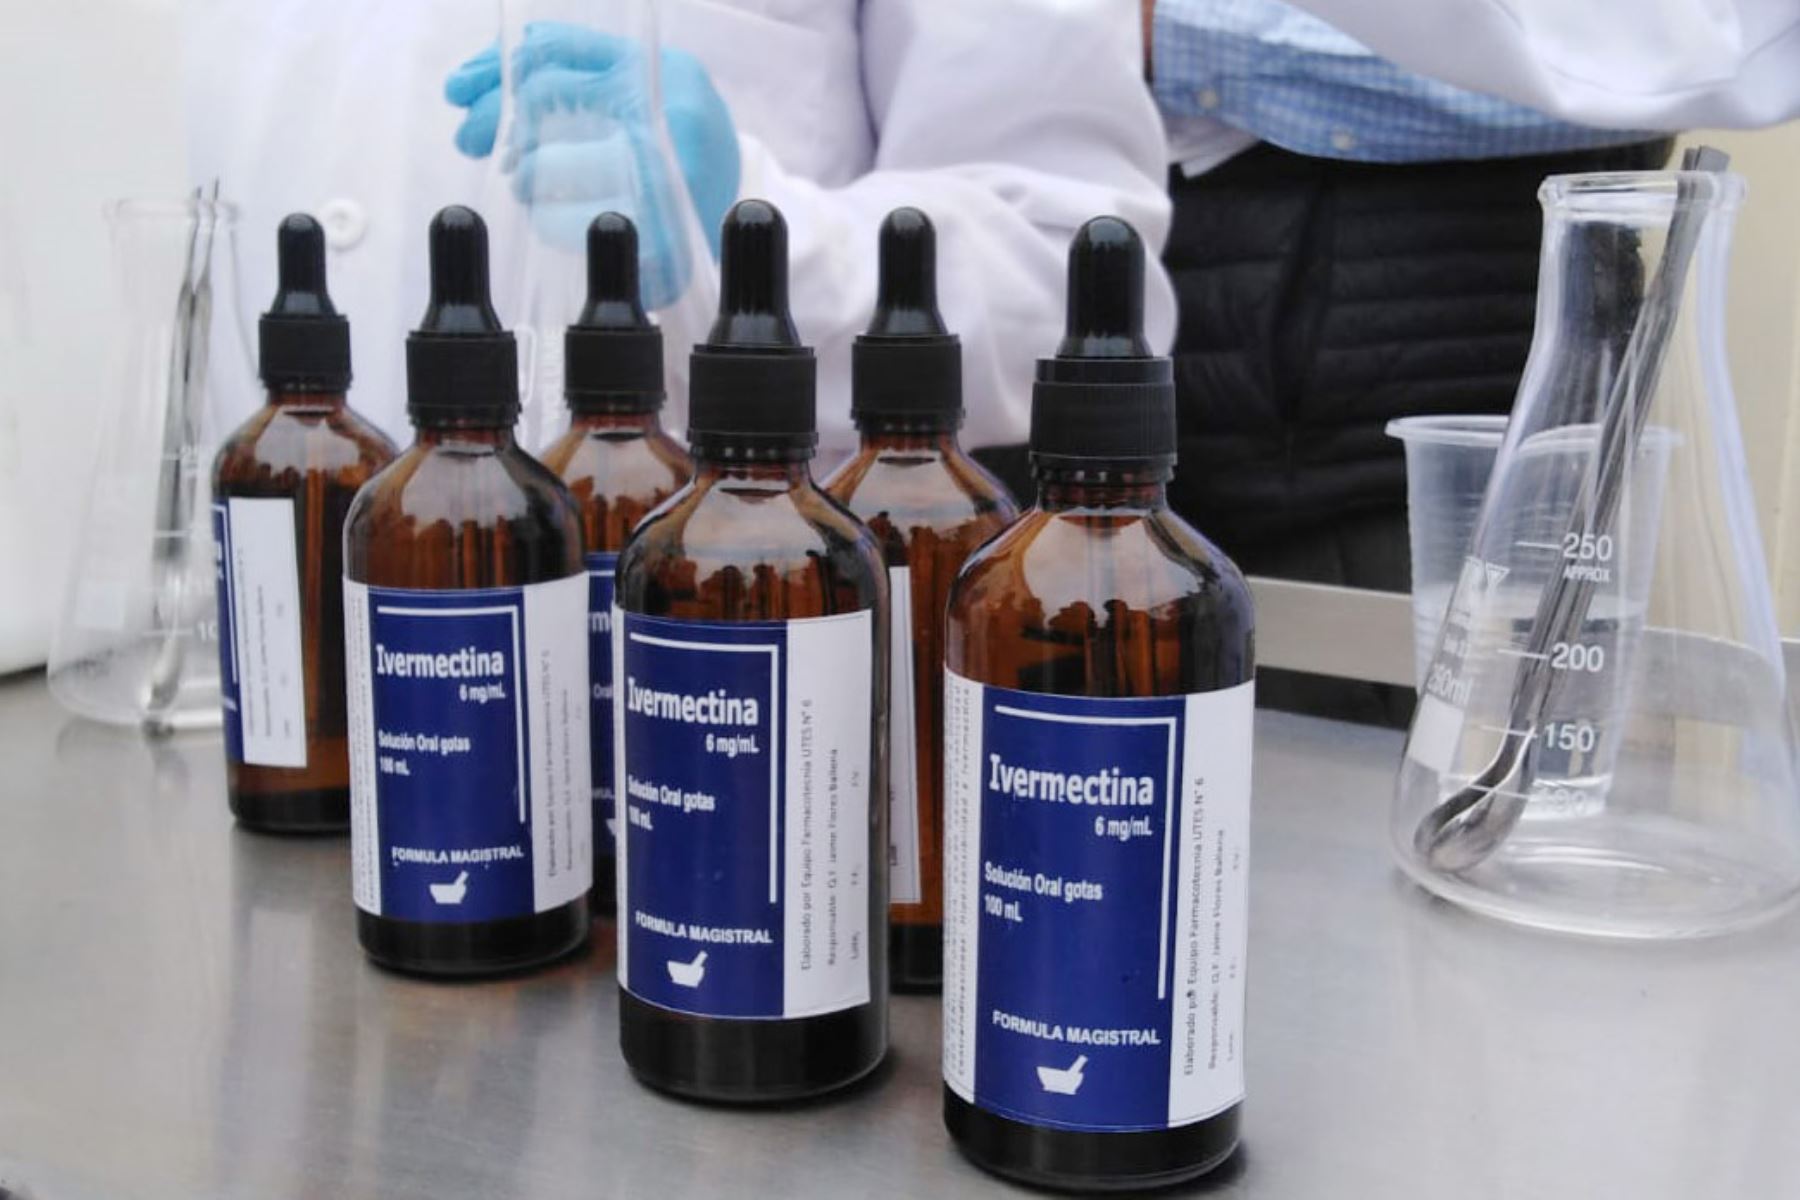 Hasta fines de junio, La Libertad producirá 150,000 dosis de ivermectina para distribuirlas a los pacientes covid-19. Foto: Gobierno Regional de La Libertad